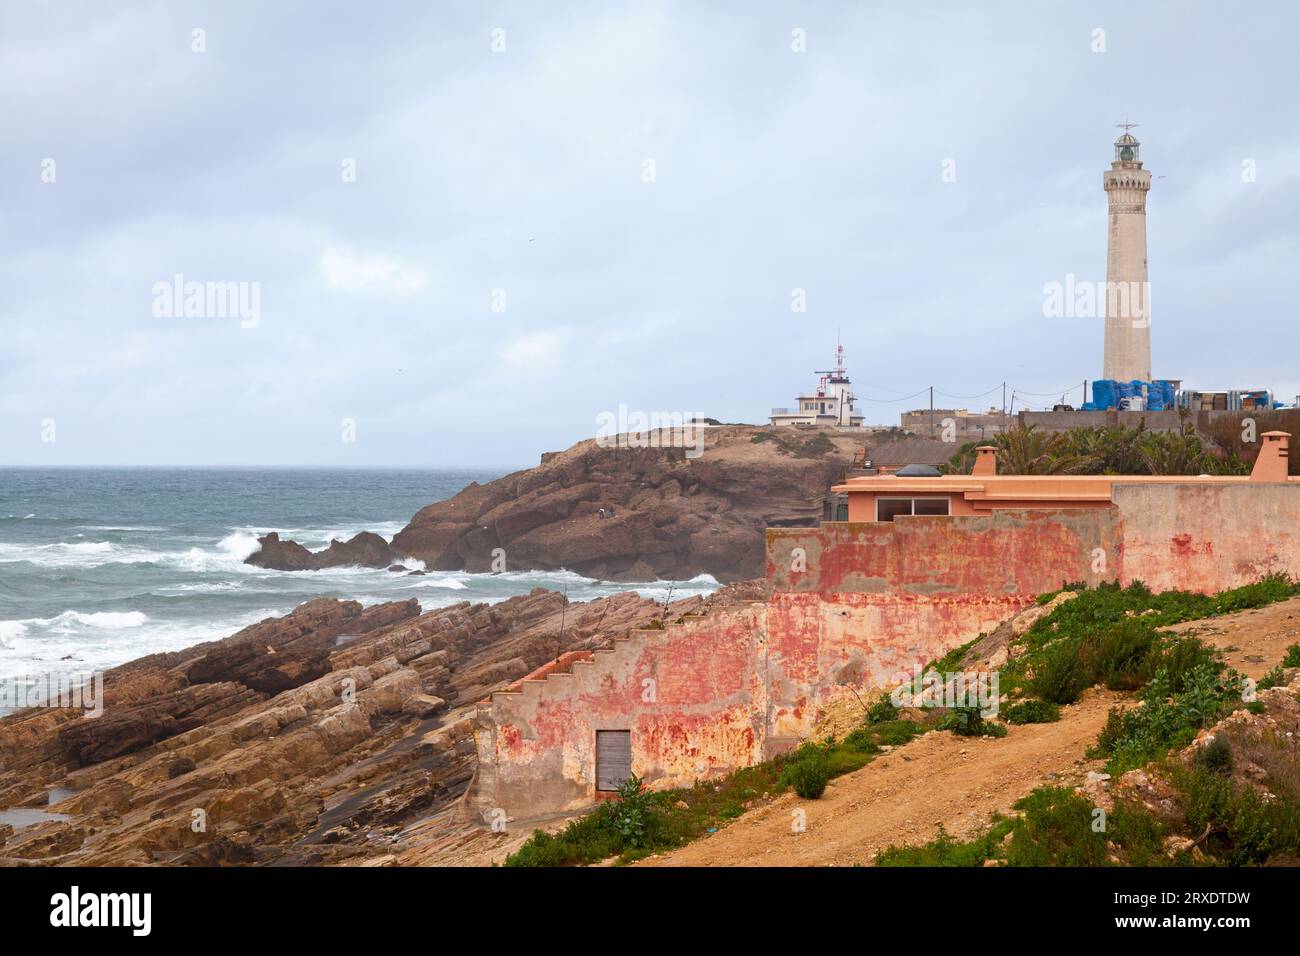 Le phare El Hank est un phare situé sur le cap El Hank, à l'ouest du port de Casablanca (région Casablanca-Settat - Maroc). Banque D'Images